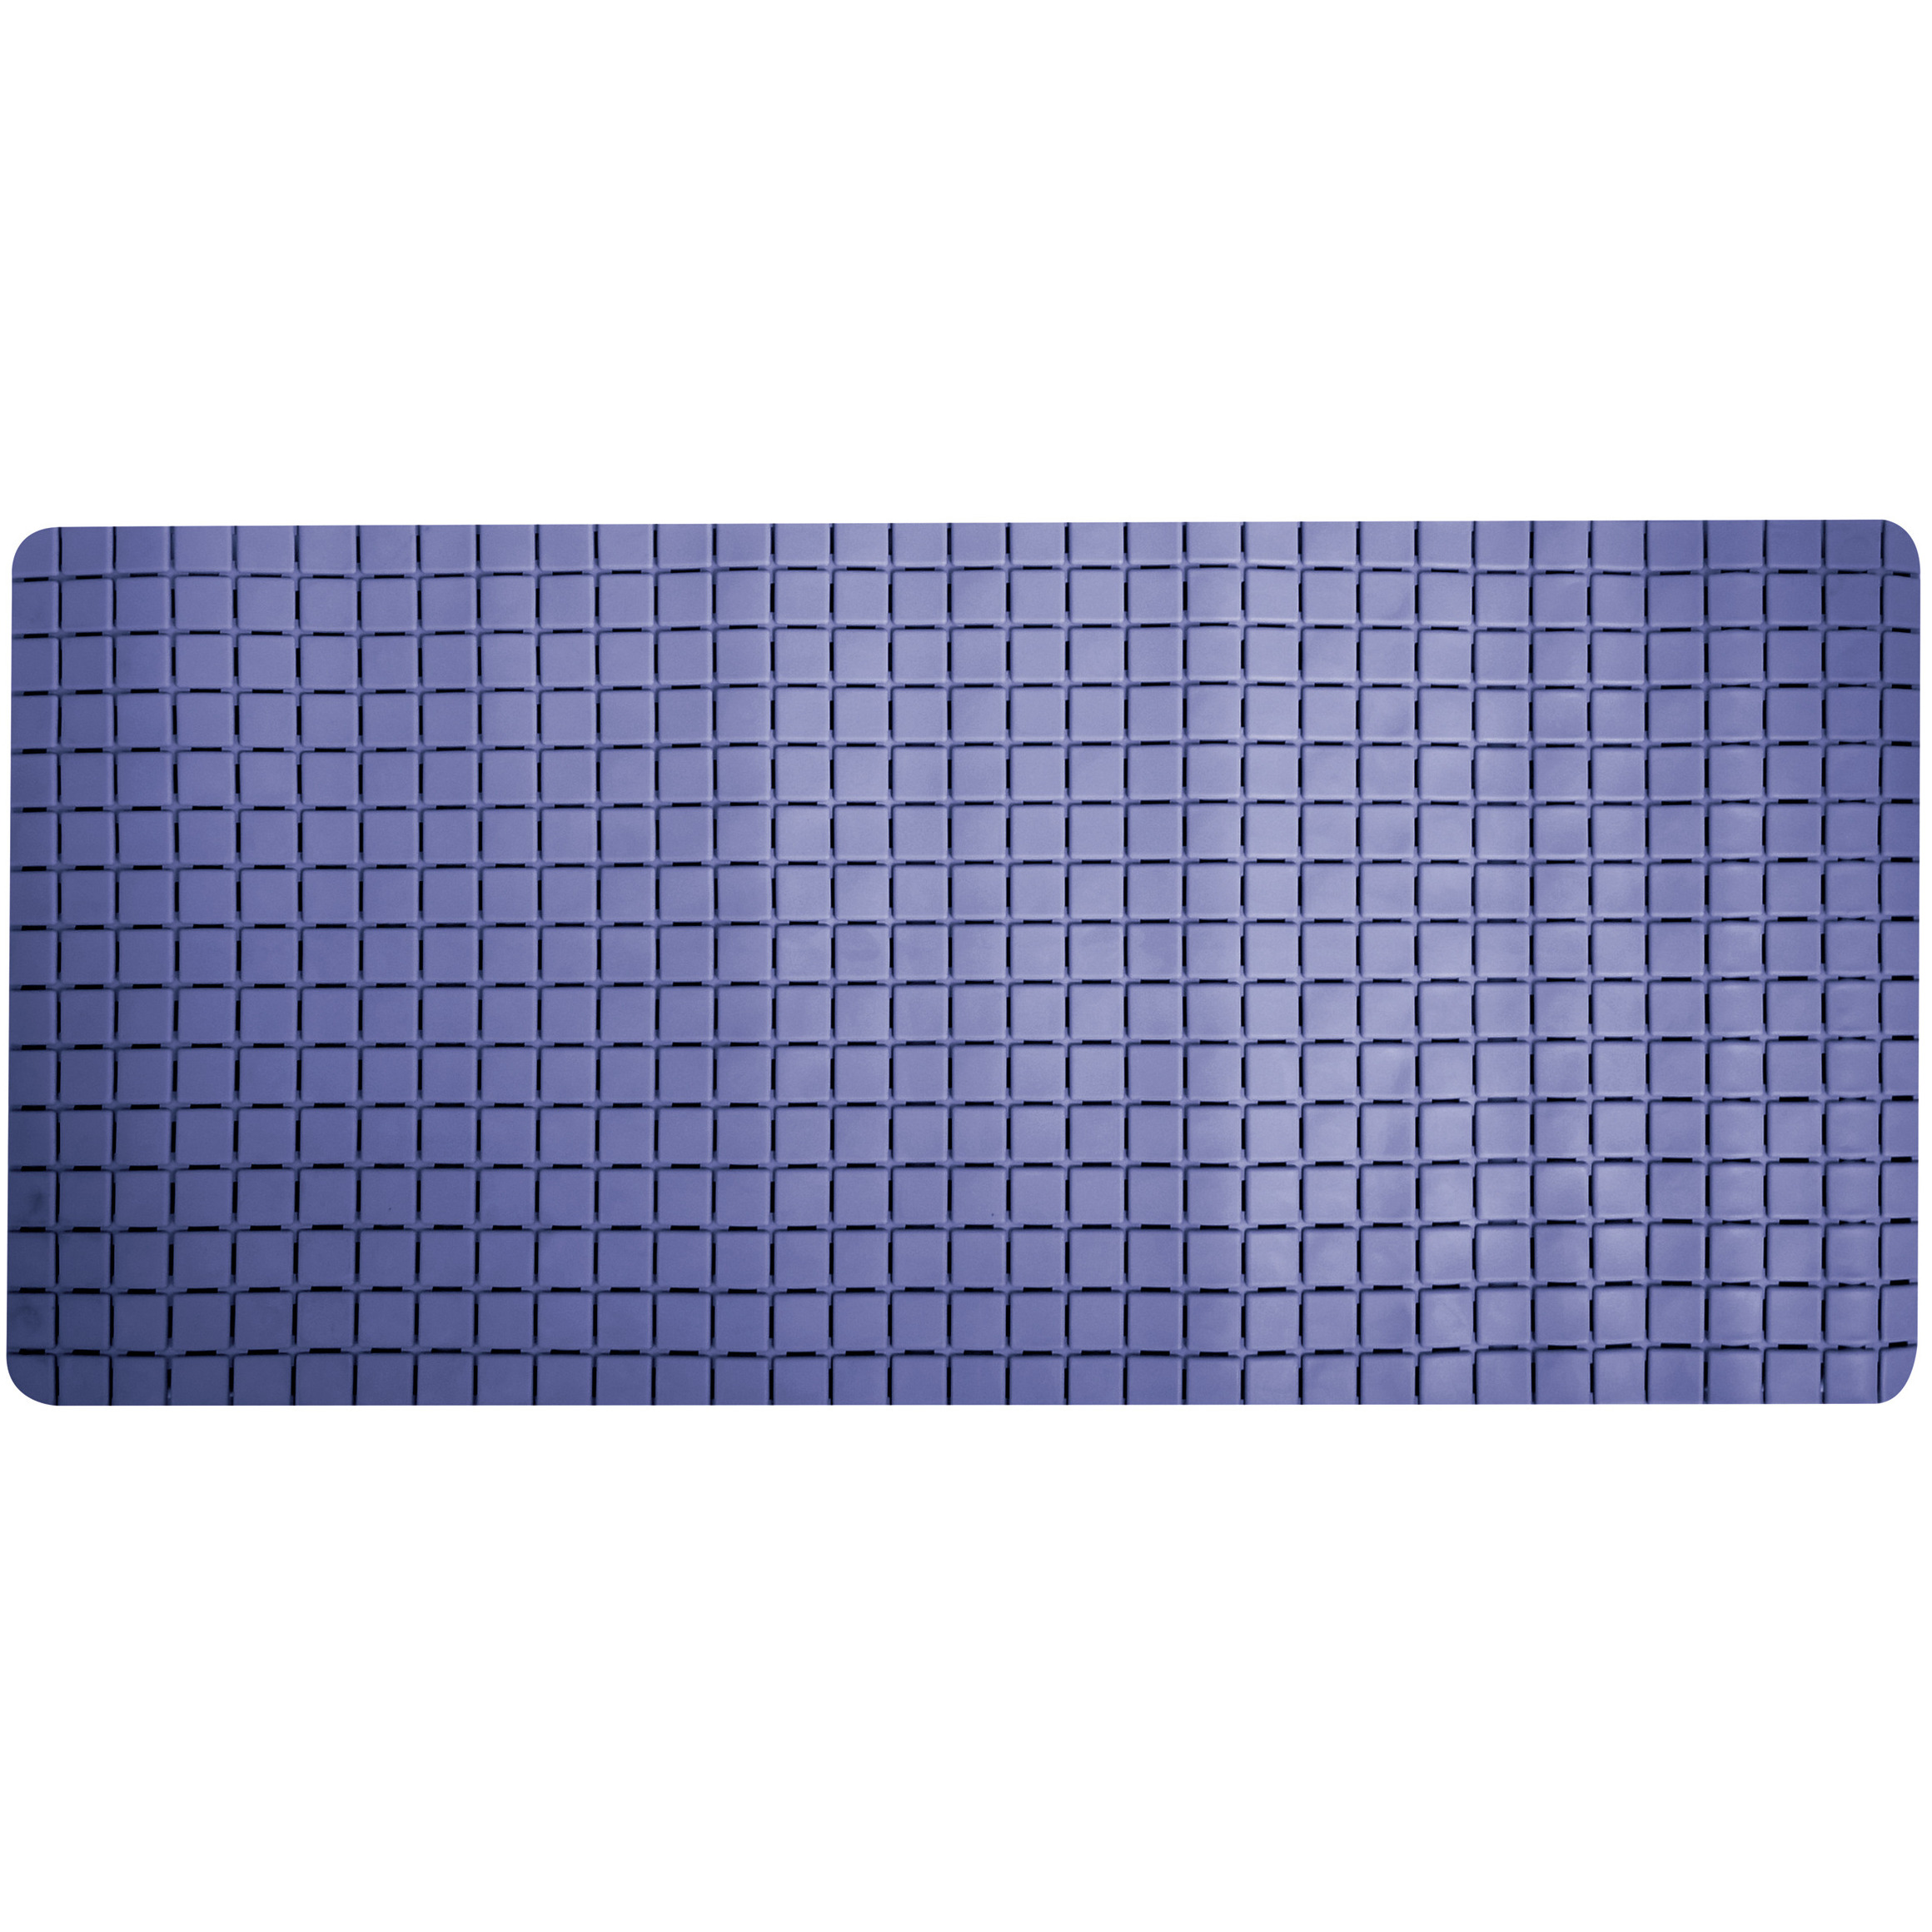 Douche-bad anti-slip mat badkamer rubber blauw 76 x 36 cm rechthoek